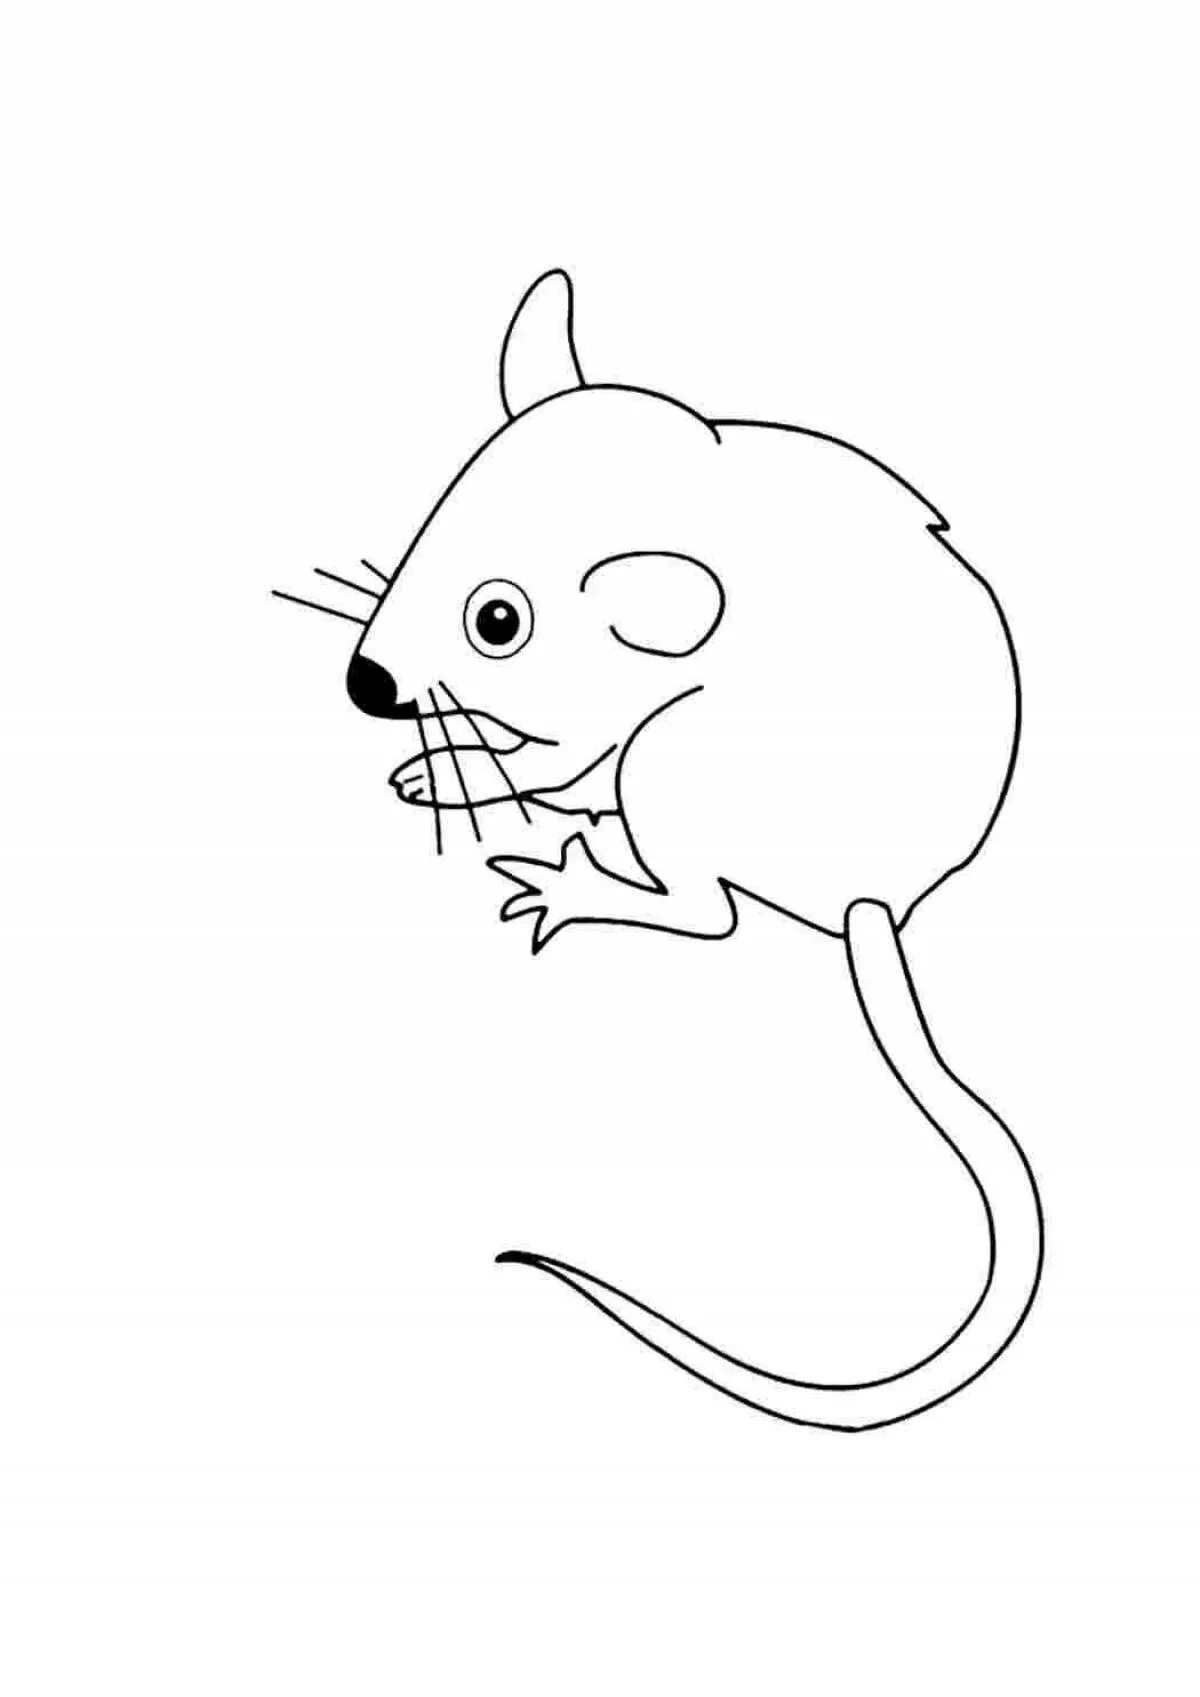 Раскраска мышка. Мышь раскраска для детей. Мышка раскраска для детей. Мышь раскраска для малышей. Раскраска мышь распечатать